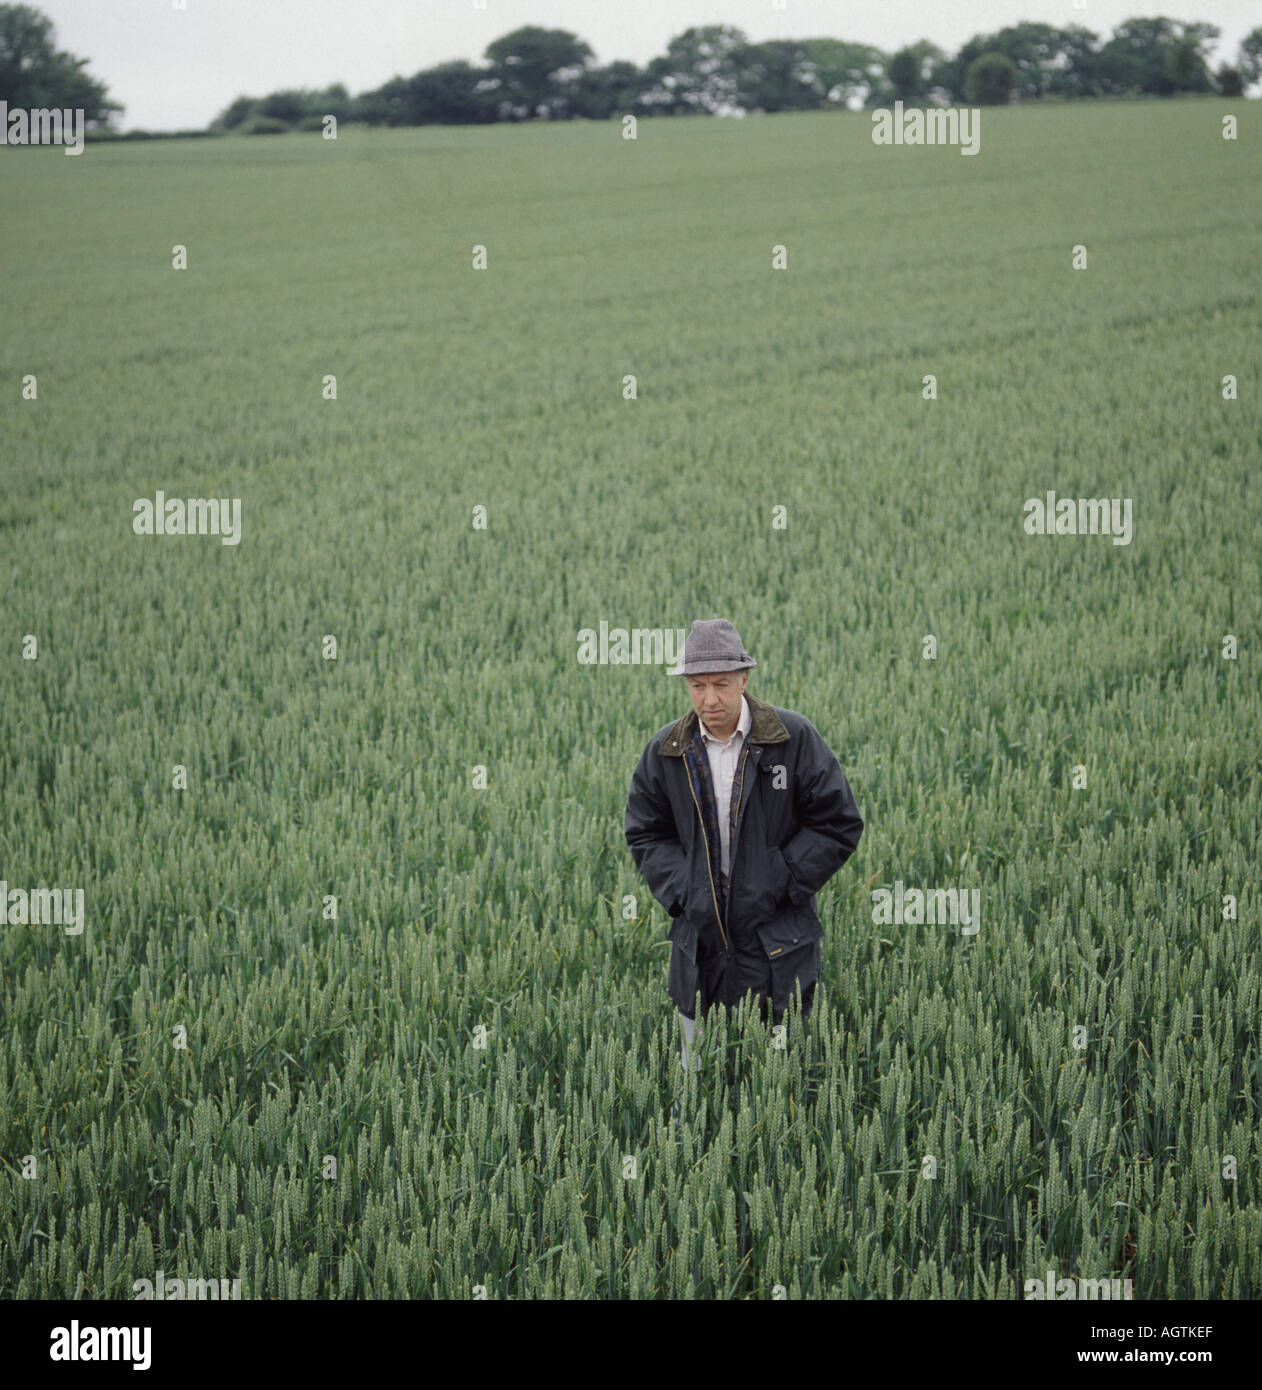 Farmer in field of unripe wheat wearing wax jacket Stock Photo